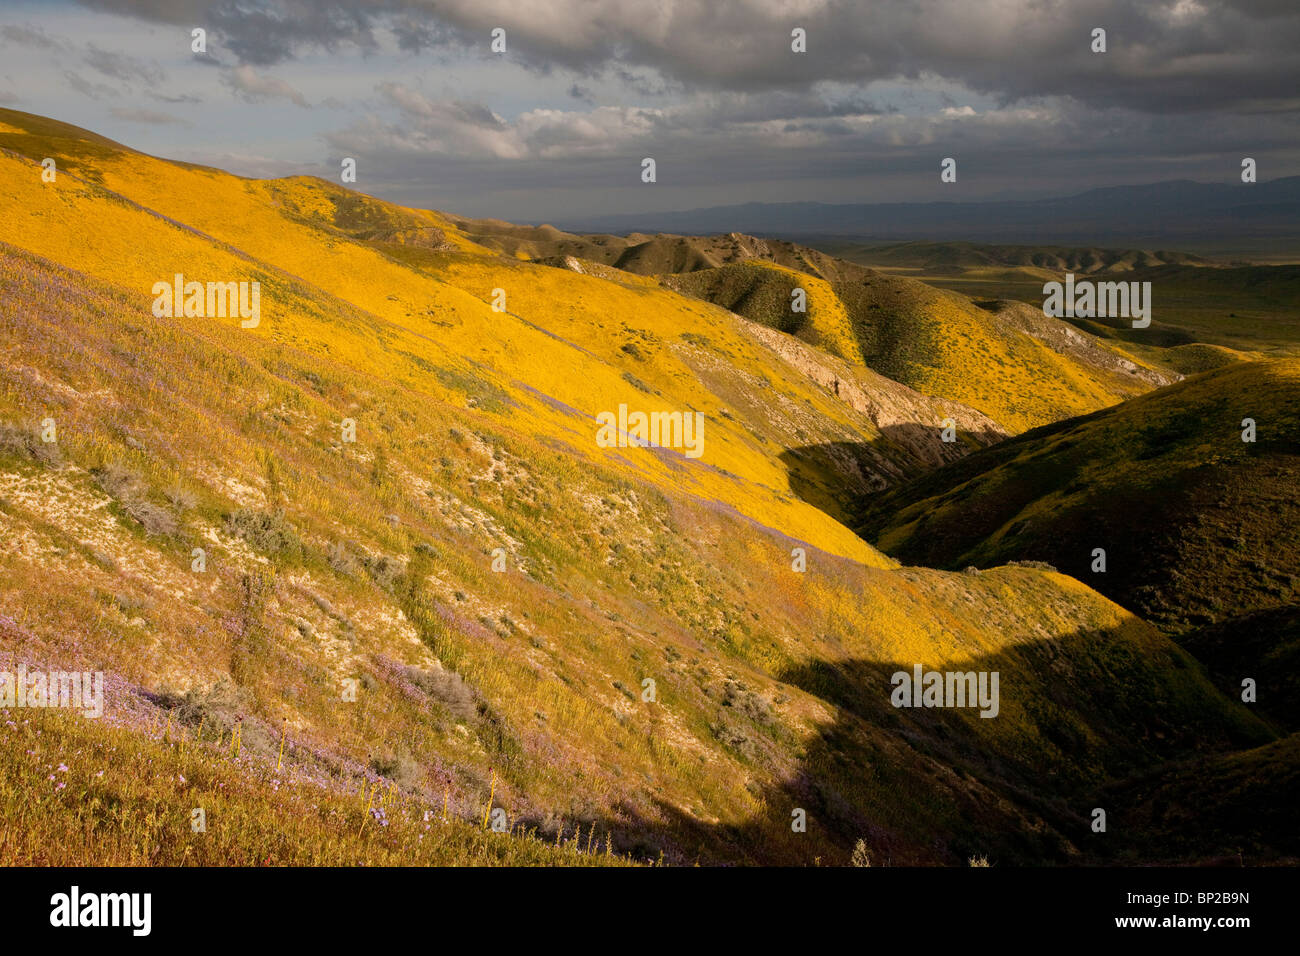 Spektakuläre Massen der Wildblumenwiese, vor allem Hang Daisy und Phacelia, an den Hängen des The Temblor Range, Carrizo Plain, USA Stockfoto